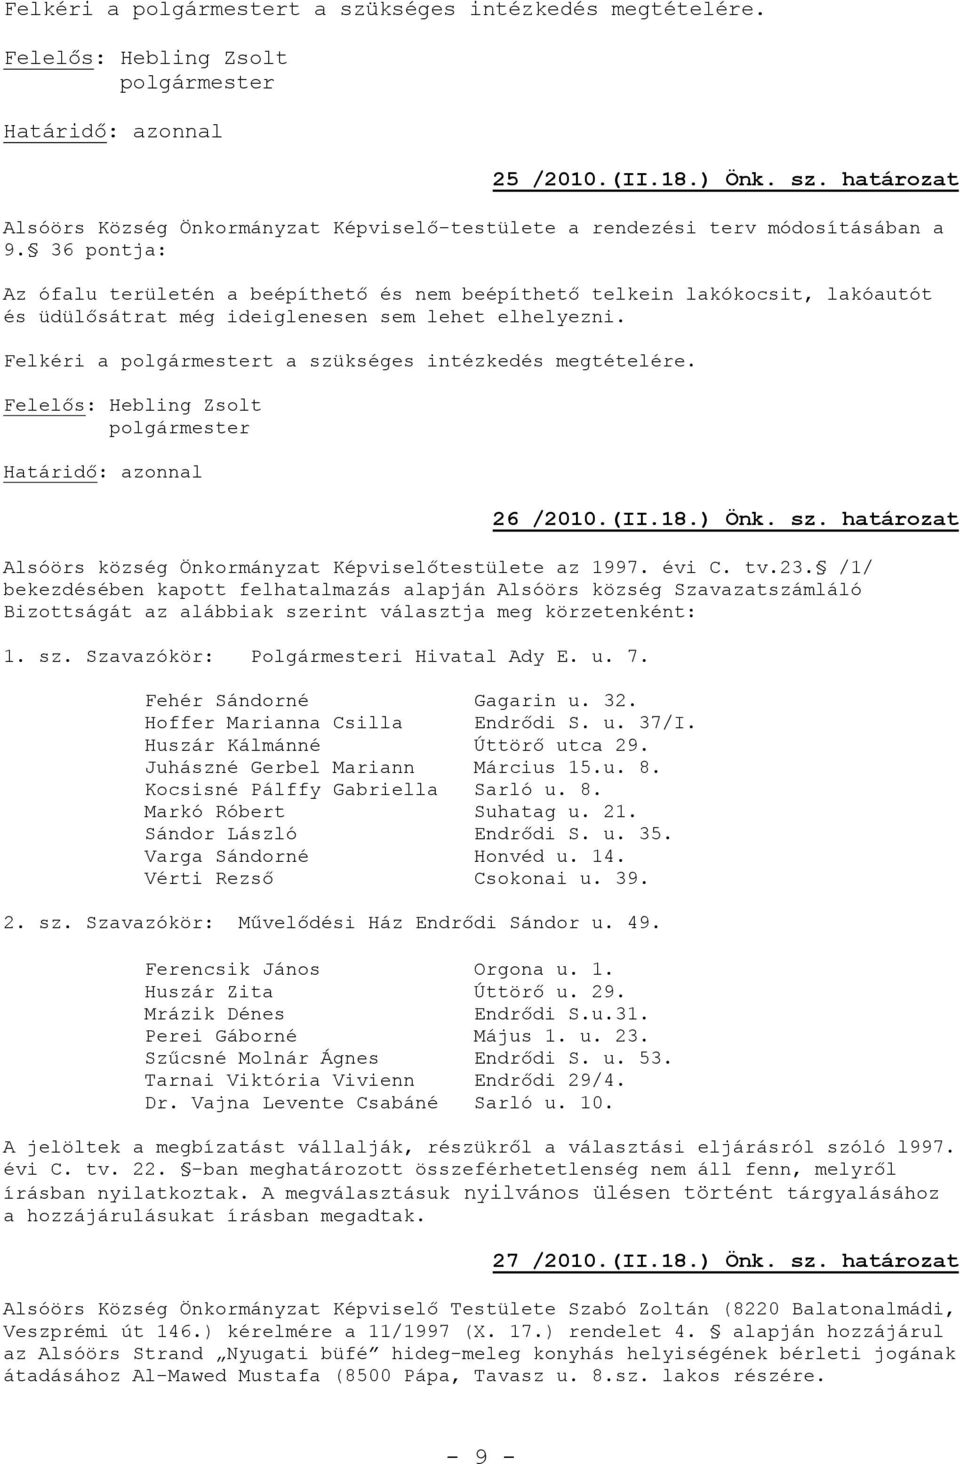 26 /2010.(II.18.) Önk. sz. határozat Alsóörs község Önkormányzat Képviselőtestülete az 1997. évi C. tv.23.